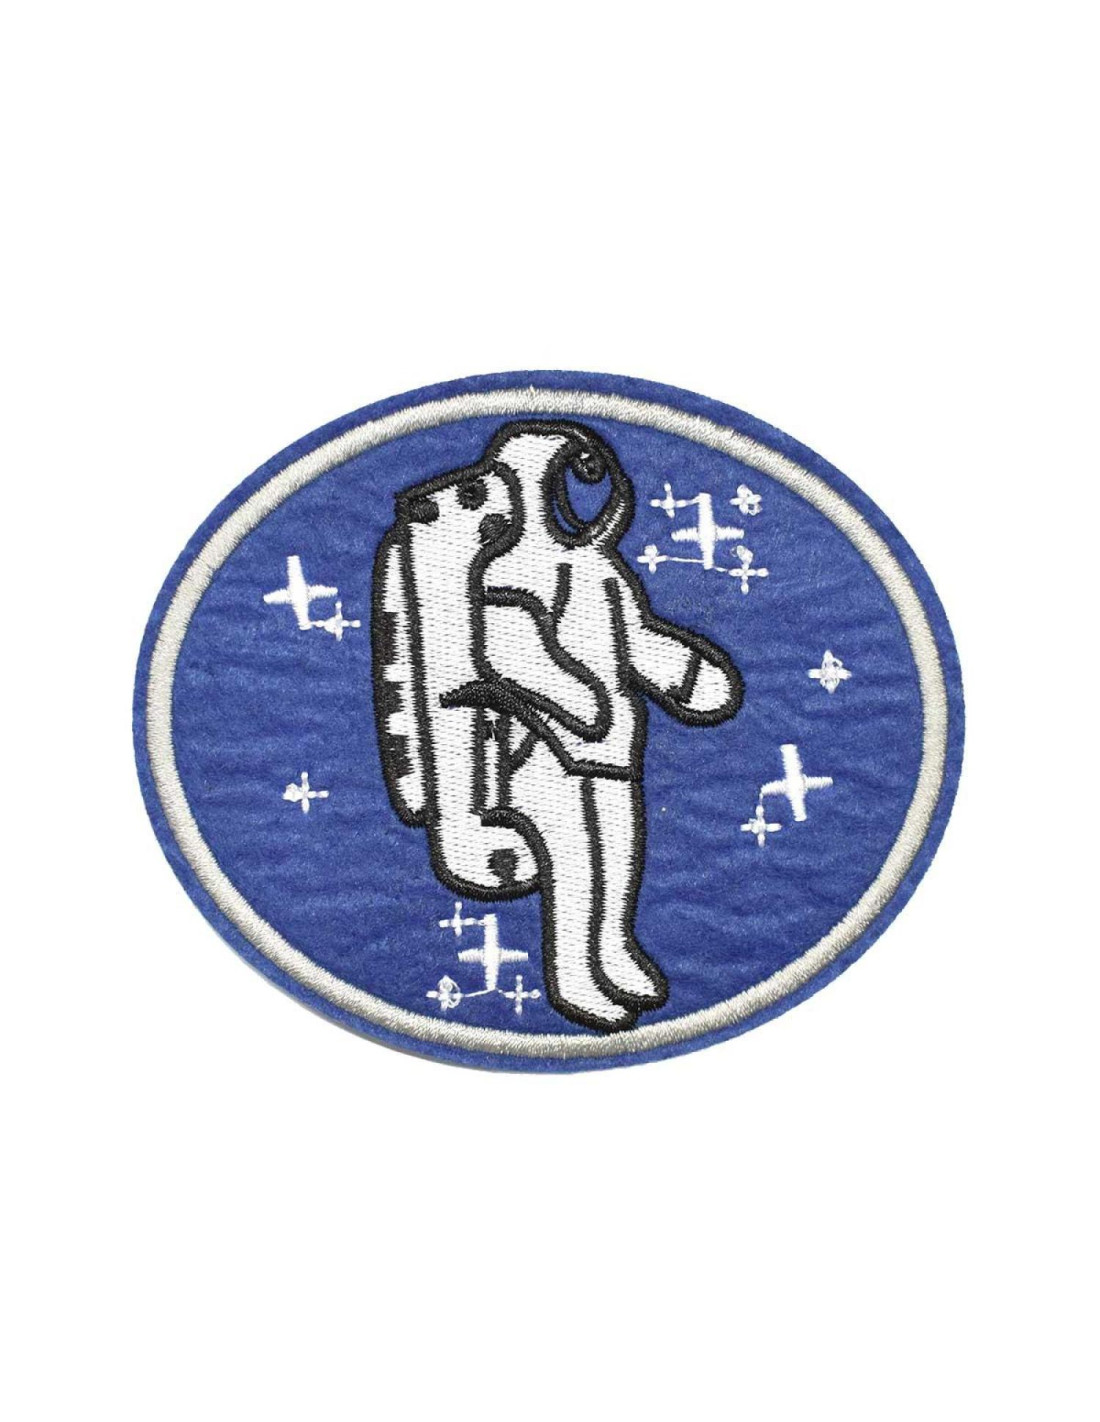 Parche - Viaje al espacio - Astronauta - azul-blanco - parche, 3,95 €